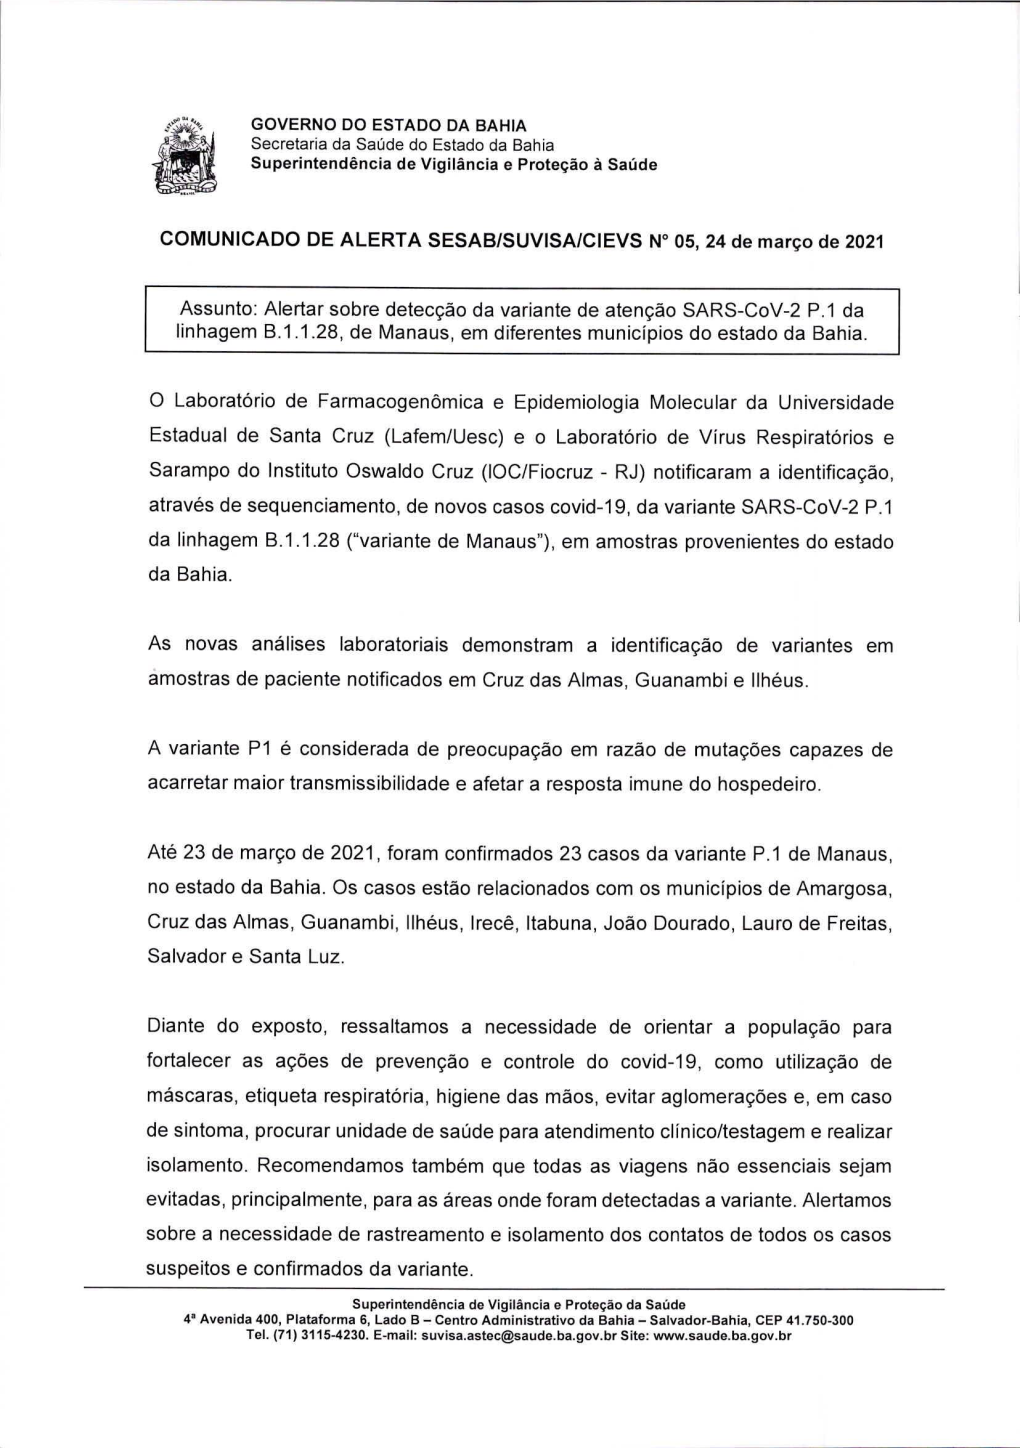 Alertar Sobre Detecgao Da Variante De Atengao SARS-Cov-2 P.1 Da Linhagem B.1.1.28, De Manaus, Em Diferentes Municfpios Do Estado Da Bahia